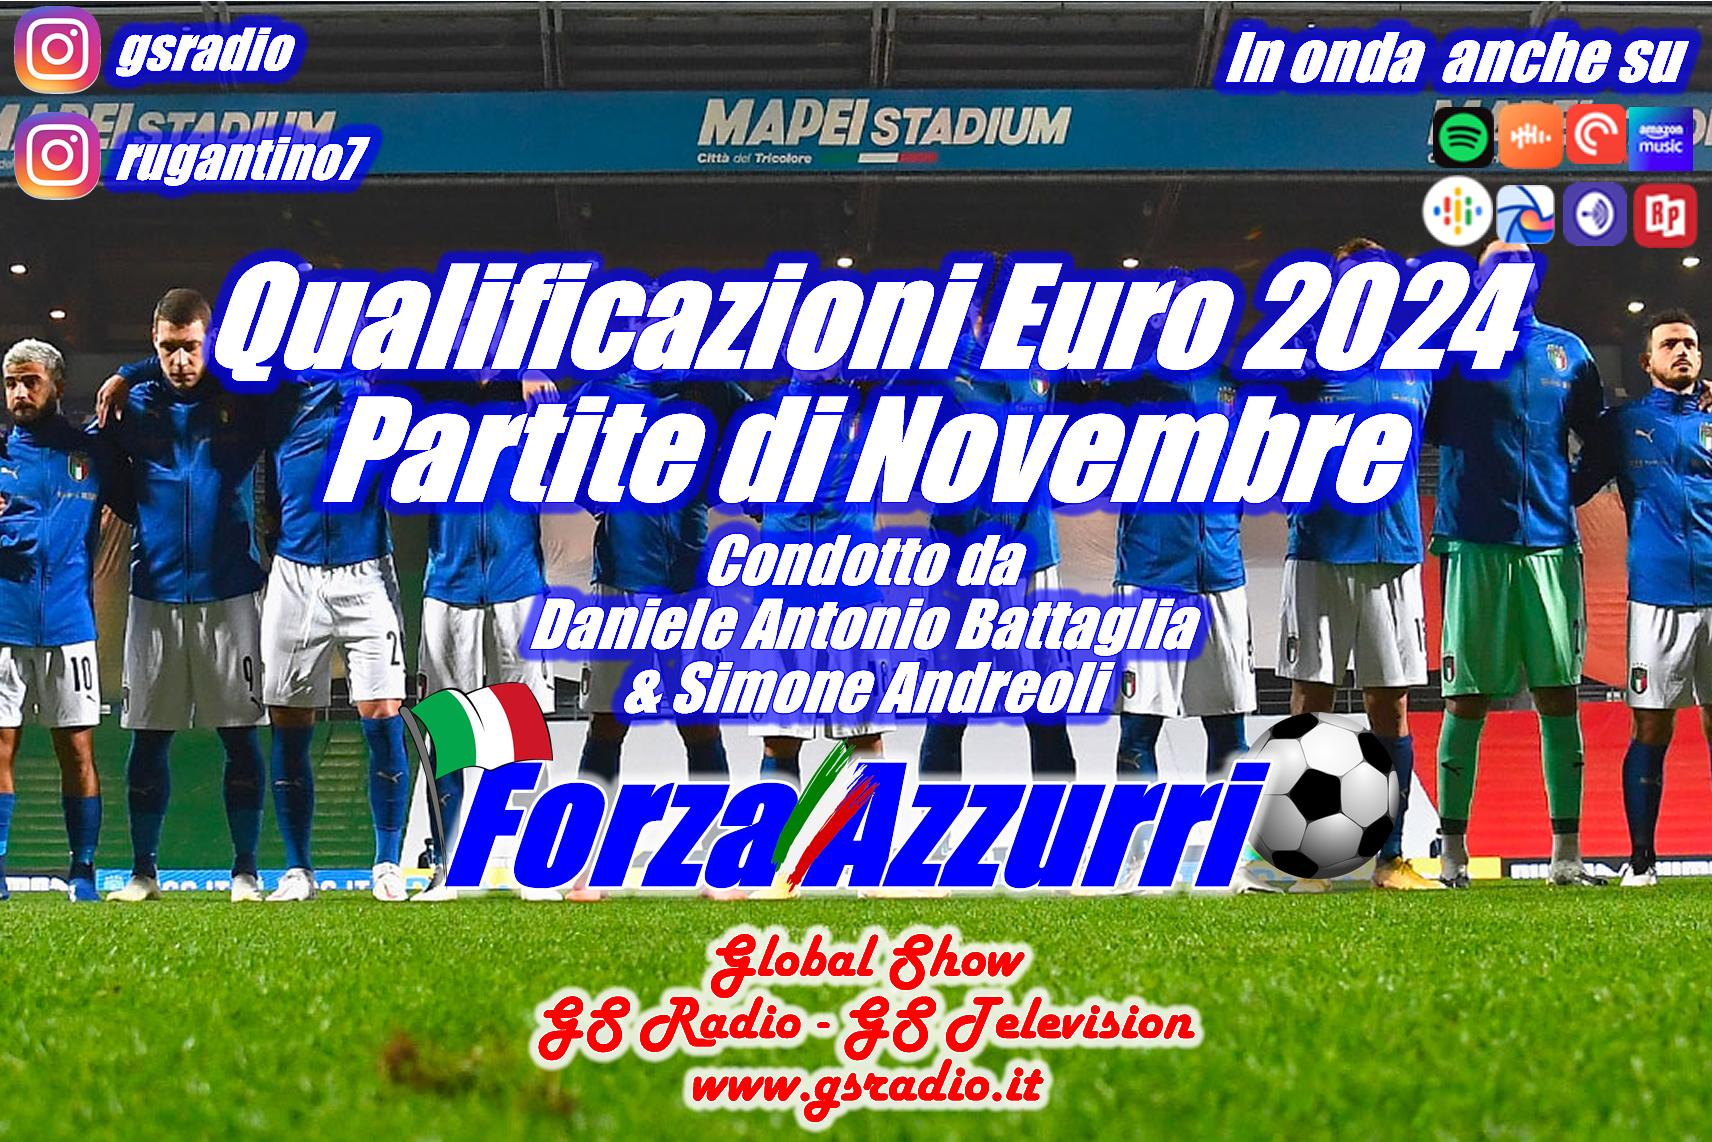 8 - Qualificazioni Euro 2024 Partite di Novembre